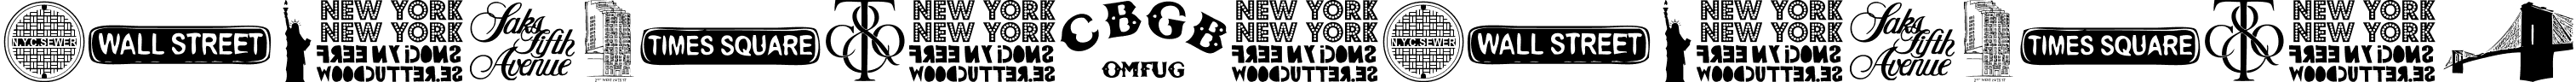 New York , New York 2 font - New York , New York 2.ttf